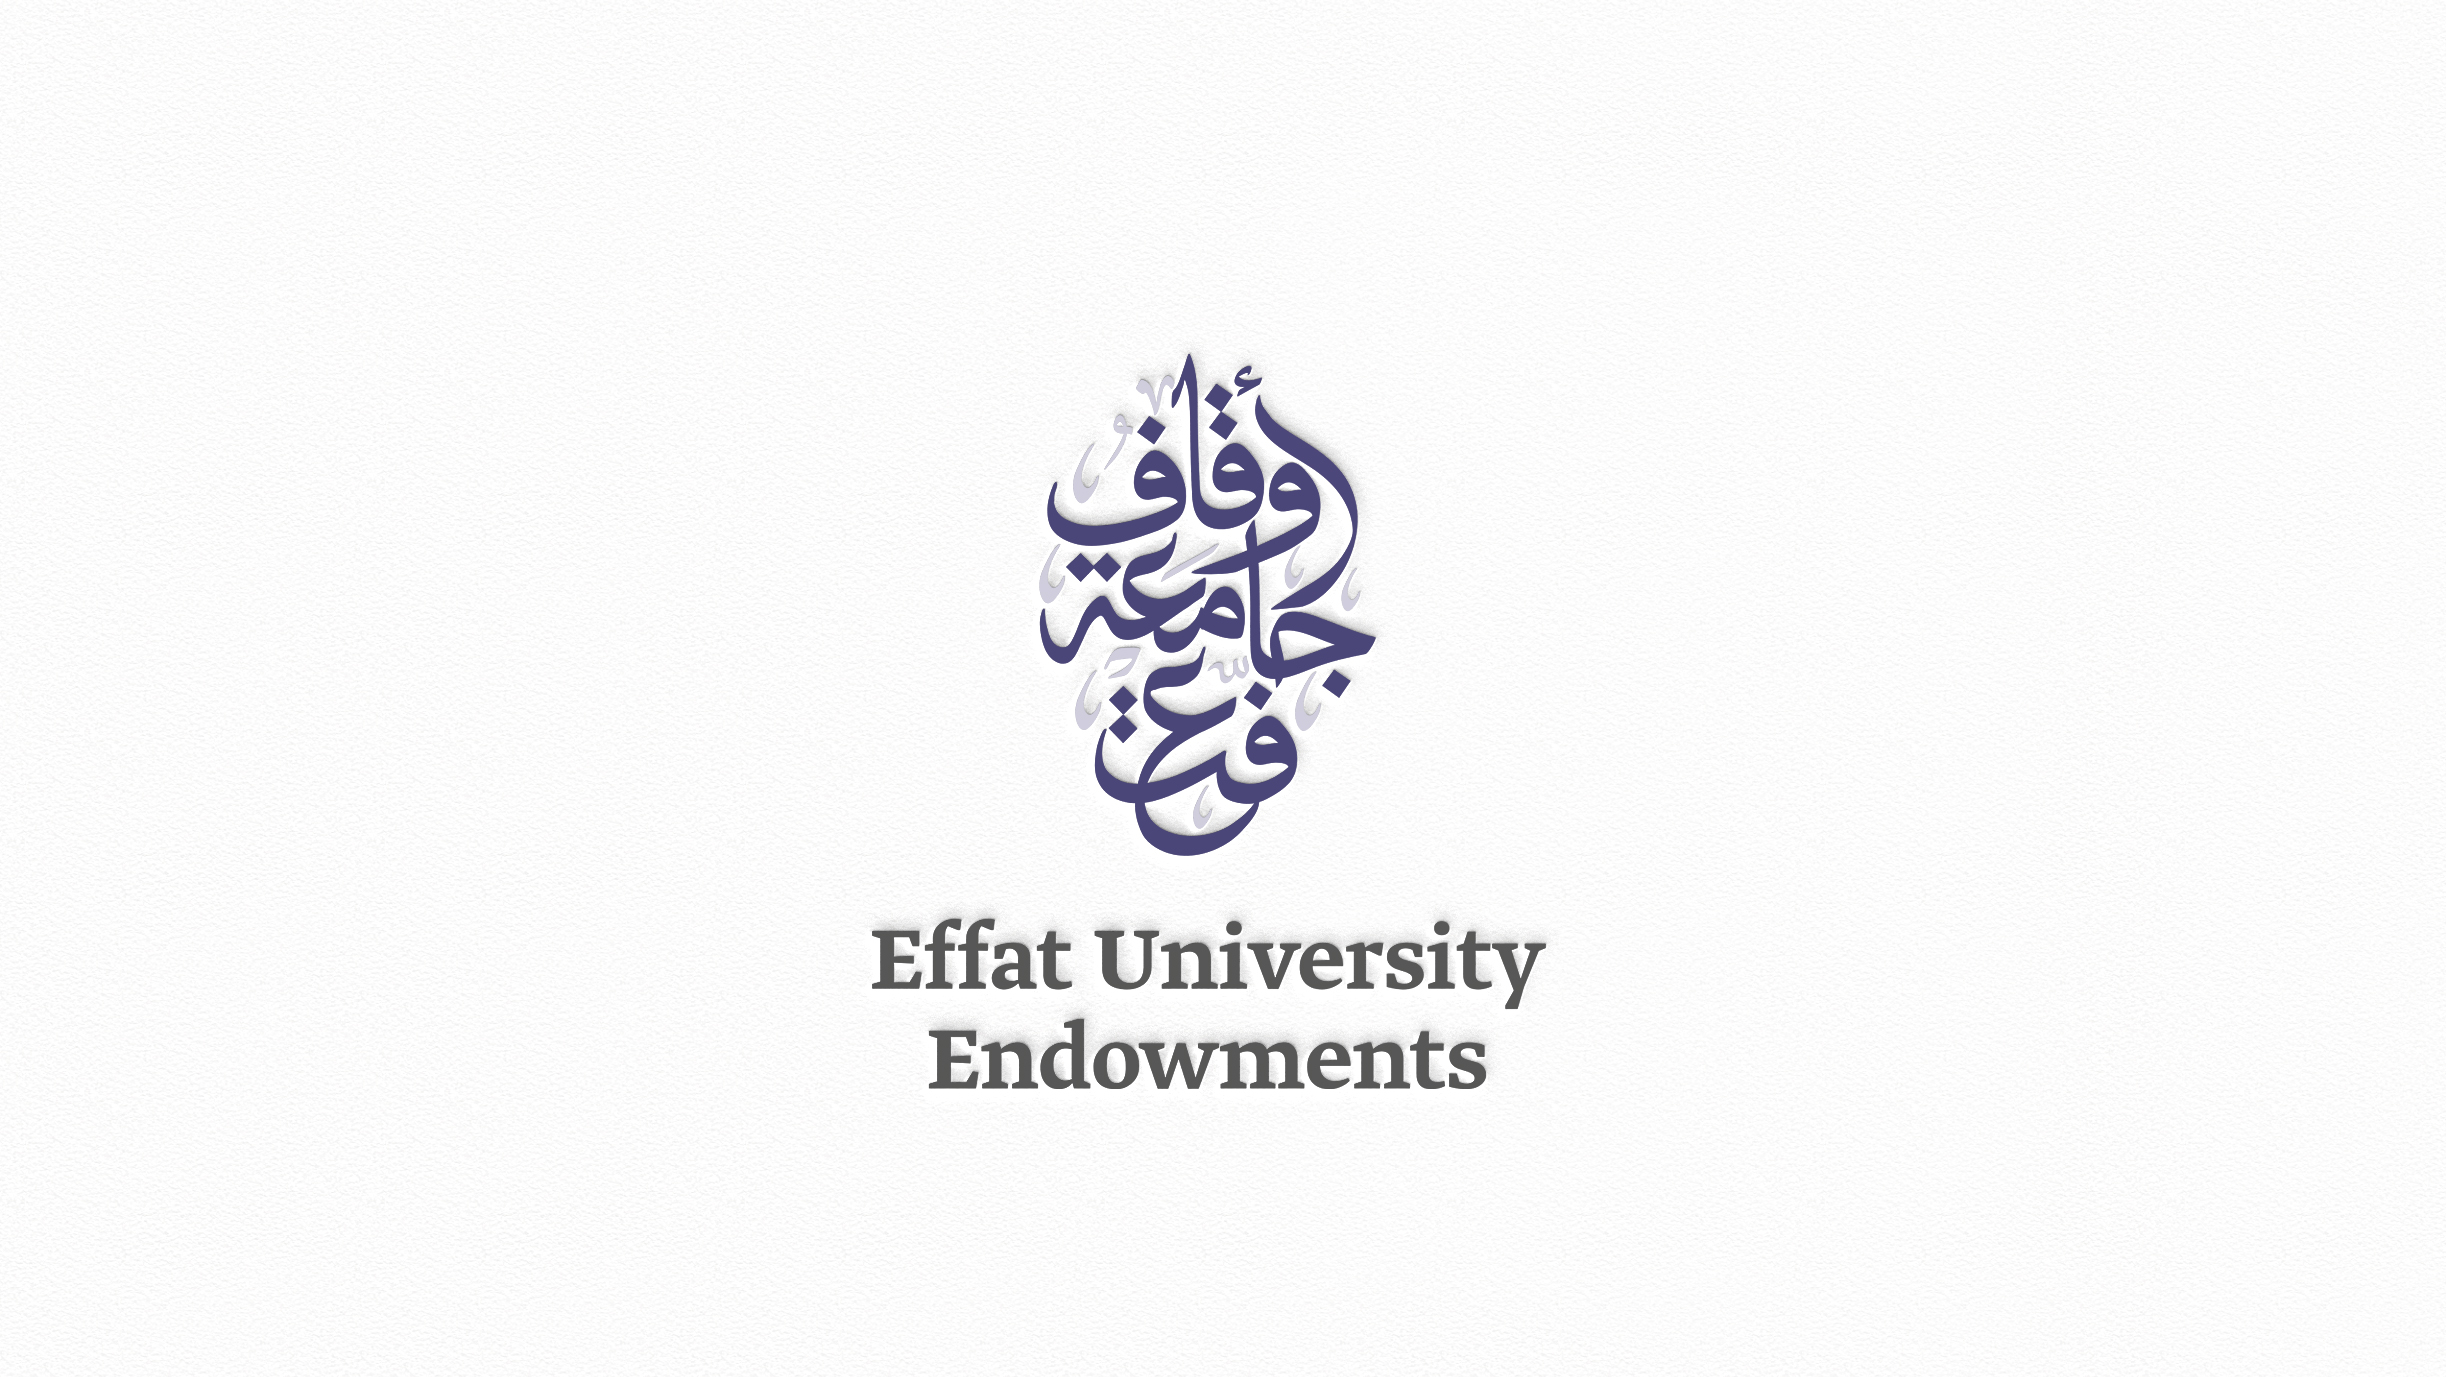 Effat University Endowments